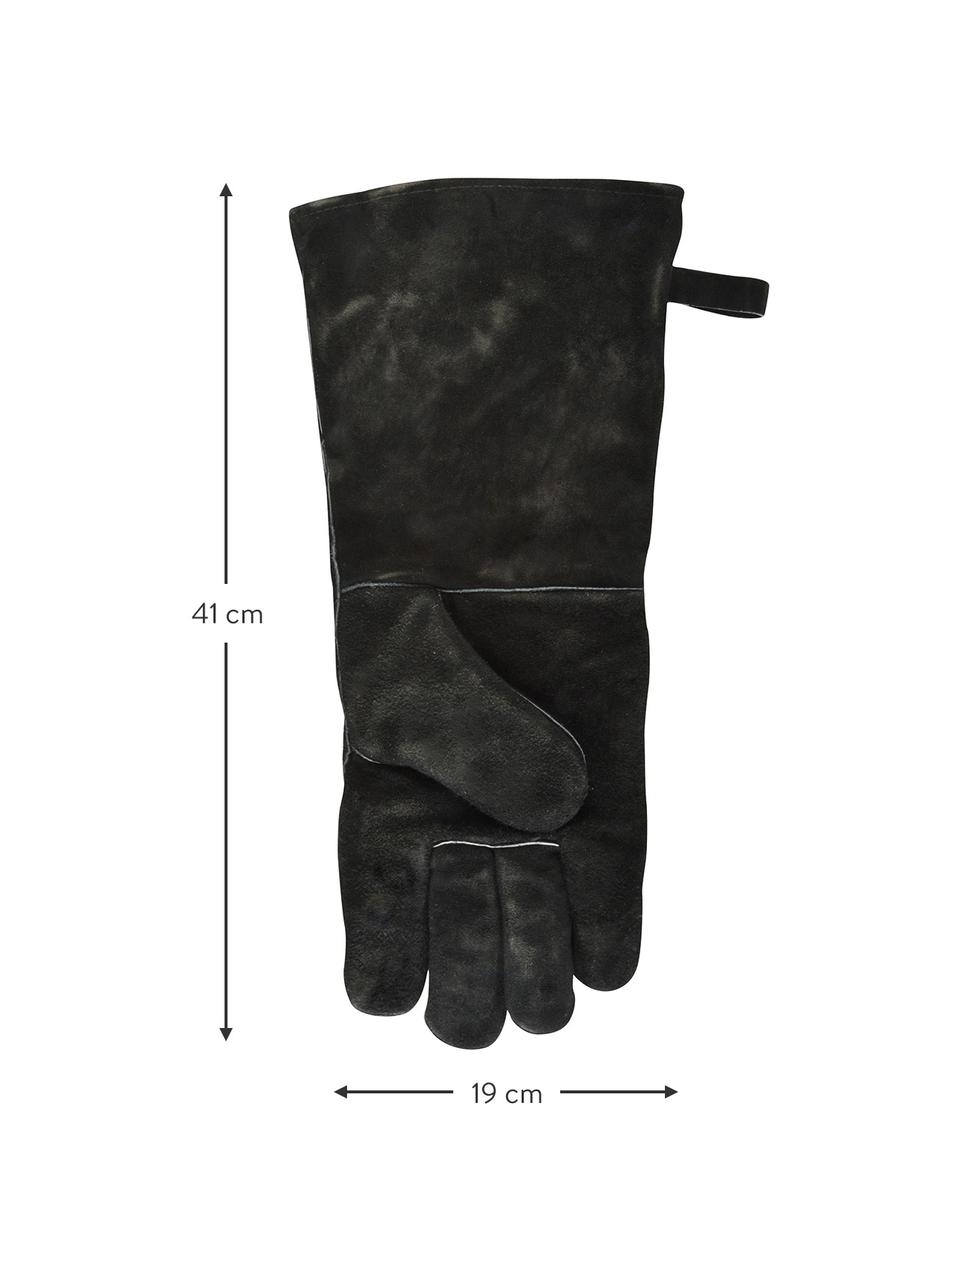 Grill-Handschuh Protect, 65% Rindspaltleder, 25% Polyester, 10% Baumwolle, Schwarz, B 19 x H 41 cm